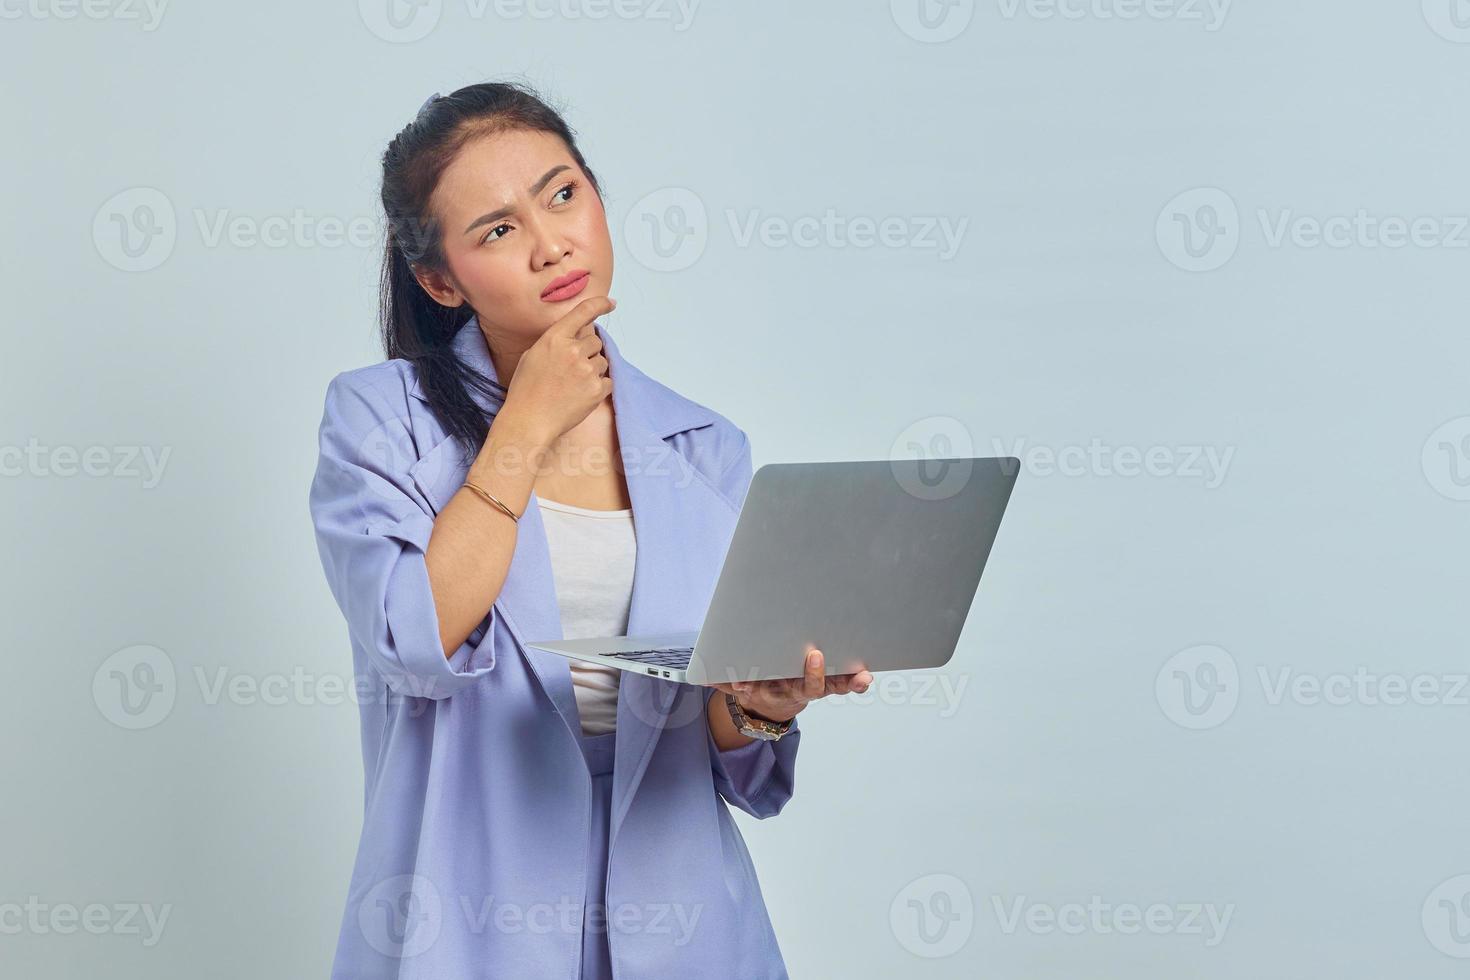 retrato de una joven asiática pensativa que recibe un proyecto por correo electrónico en una laptop aislada de fondo blanco foto